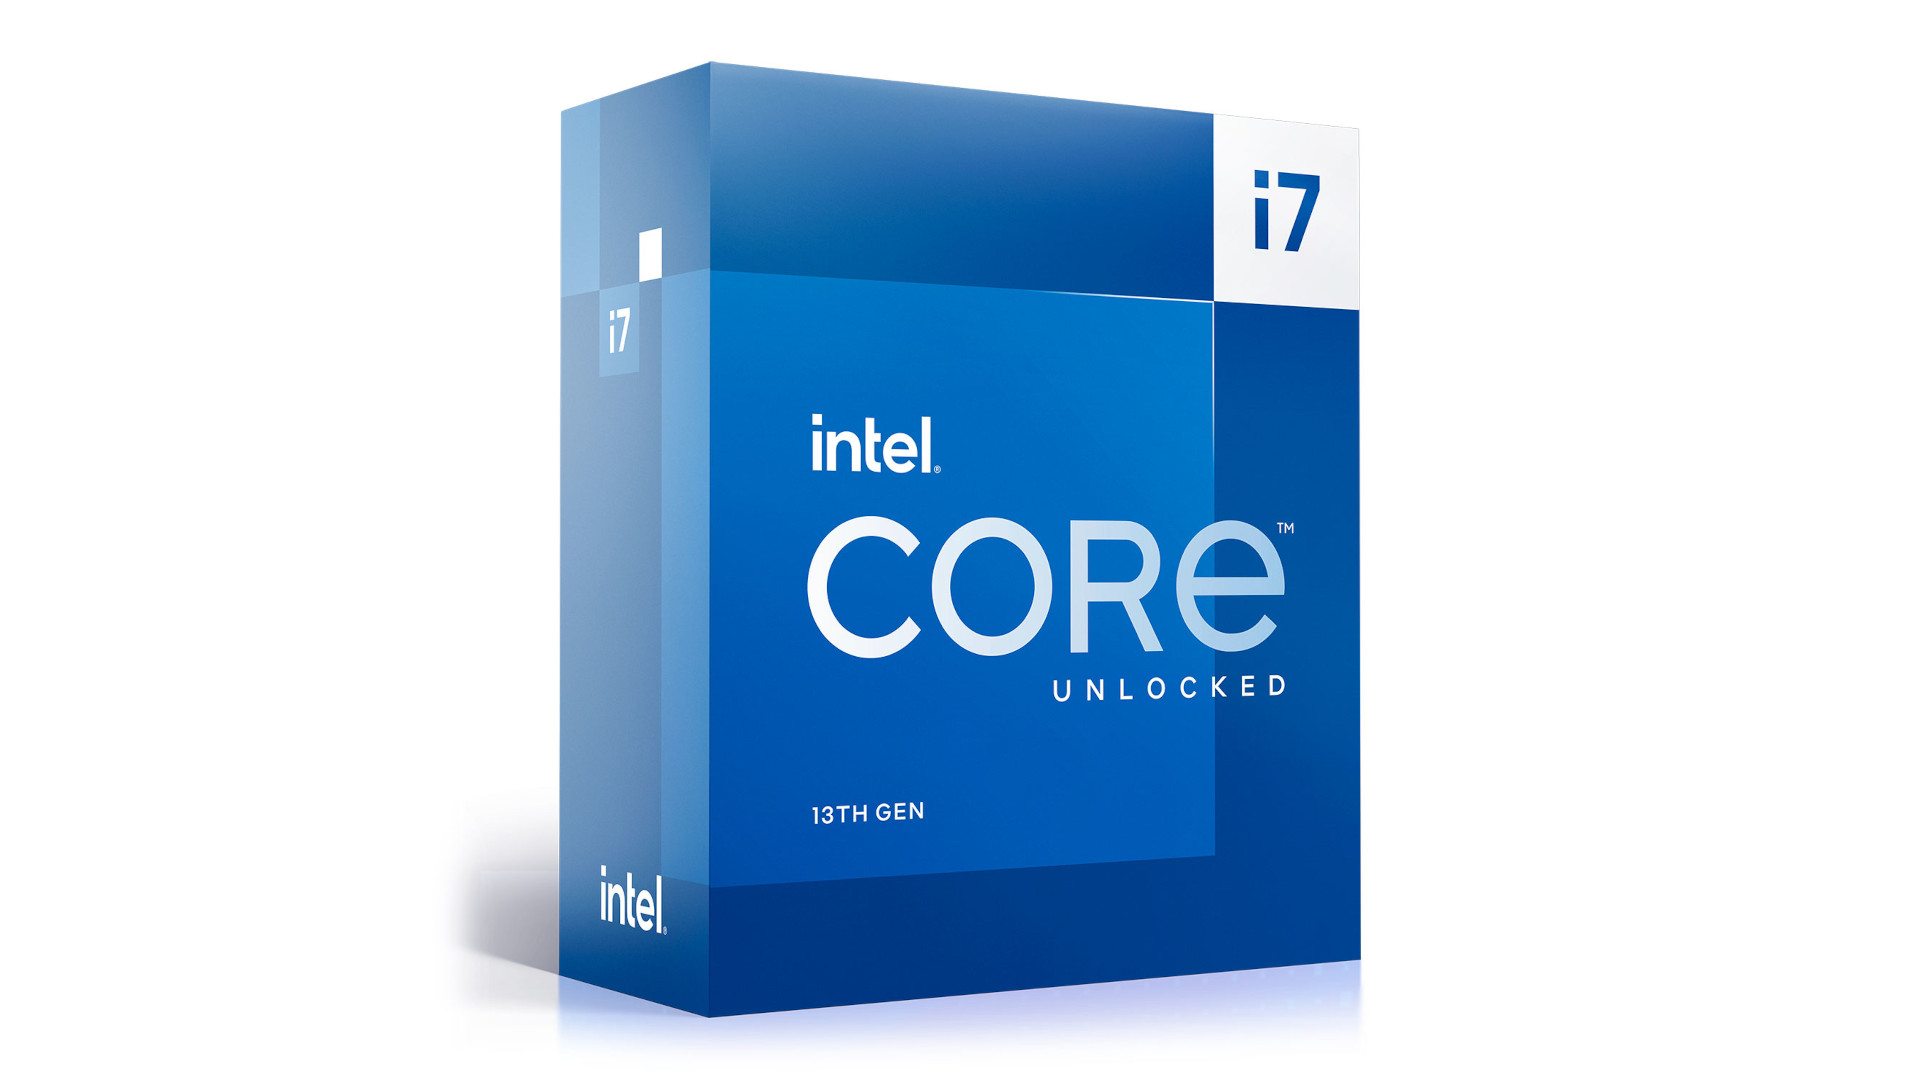 Le meilleur processeur pour le streaming est le Intel Core i7 13700K